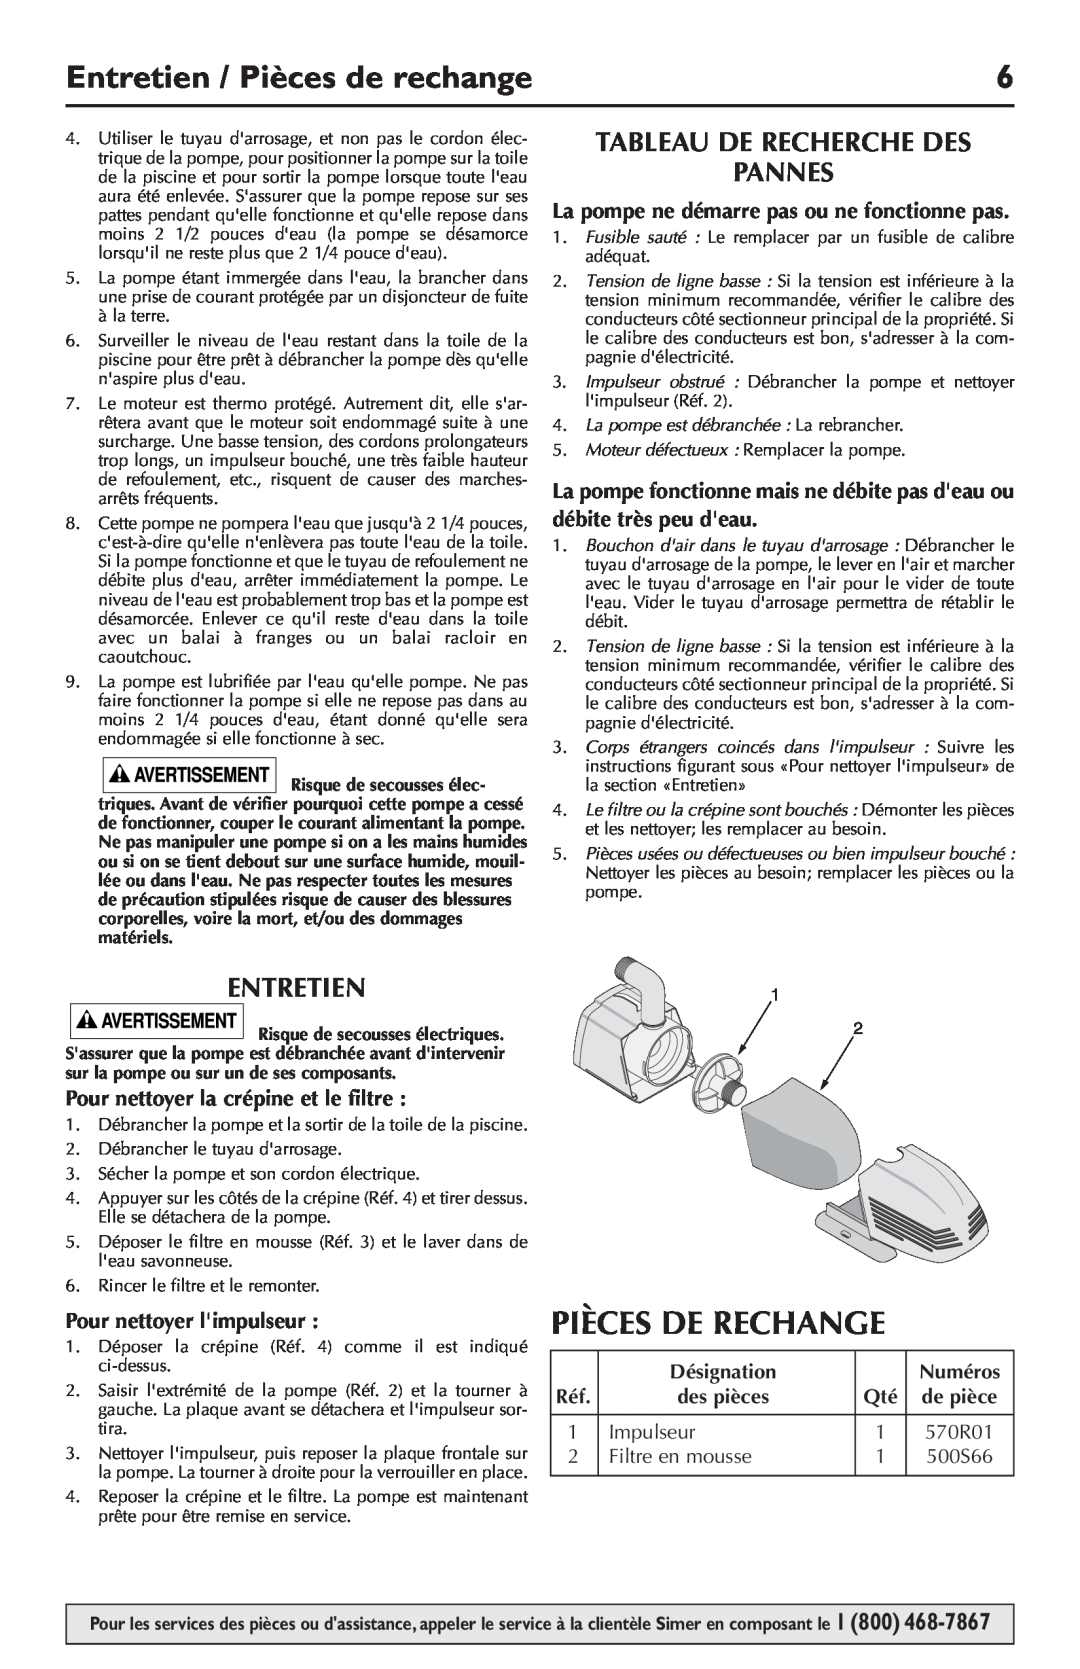 Simer Pumps 2105 Entretien / Pièces de rechange, Pièces De Rechange, Tableau De Recherche Des Pannes, Désignation, Numéros 